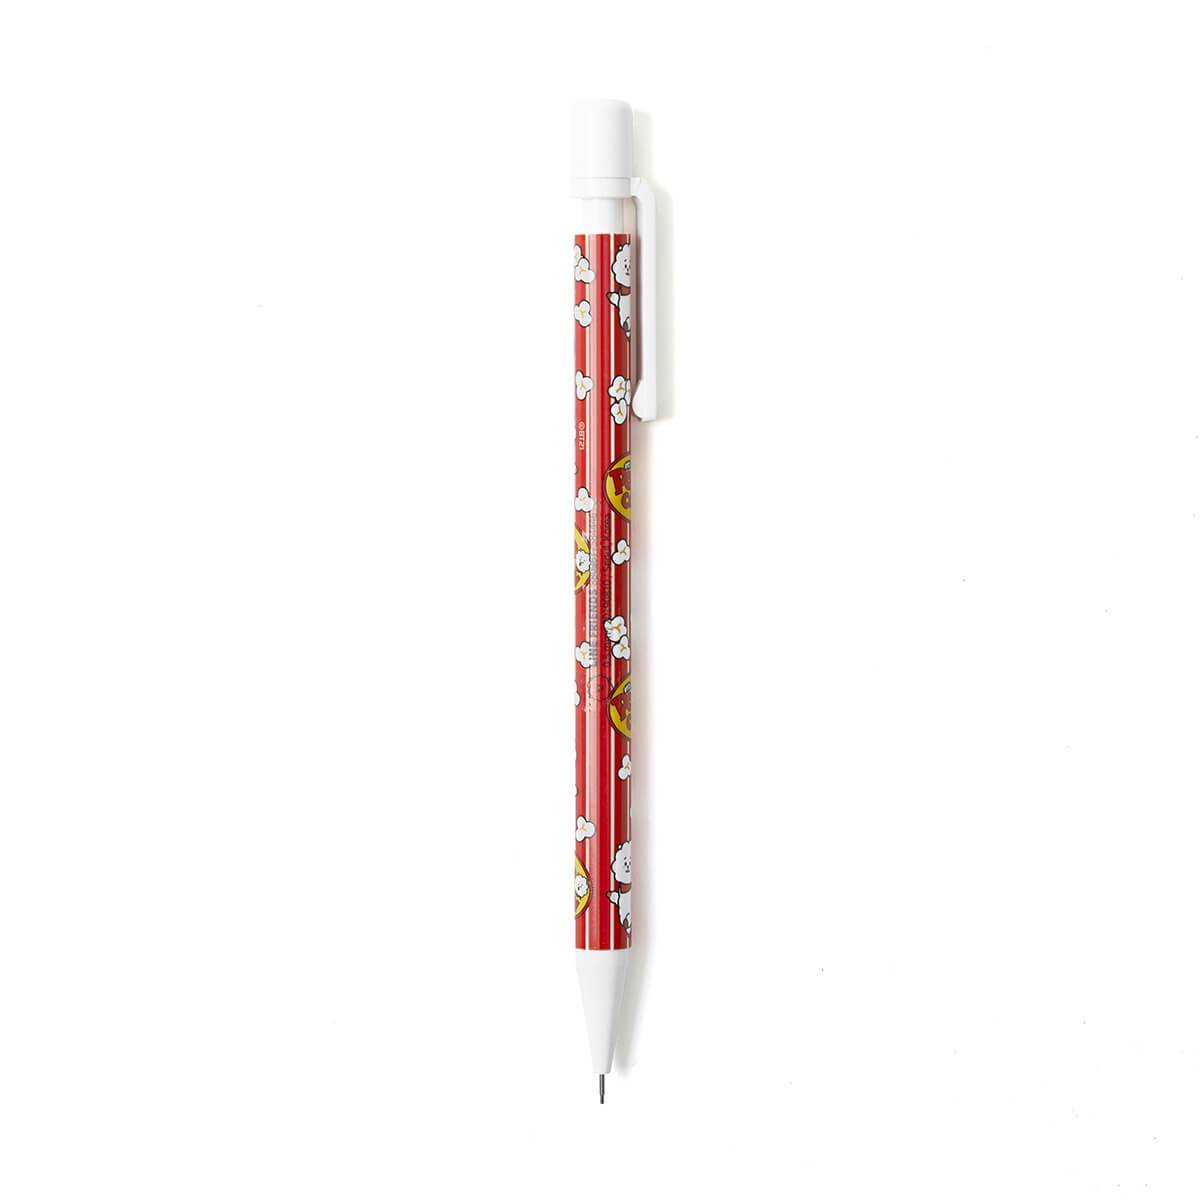 BT21 RJ Sweet Mechanical Pencil 0.5mm